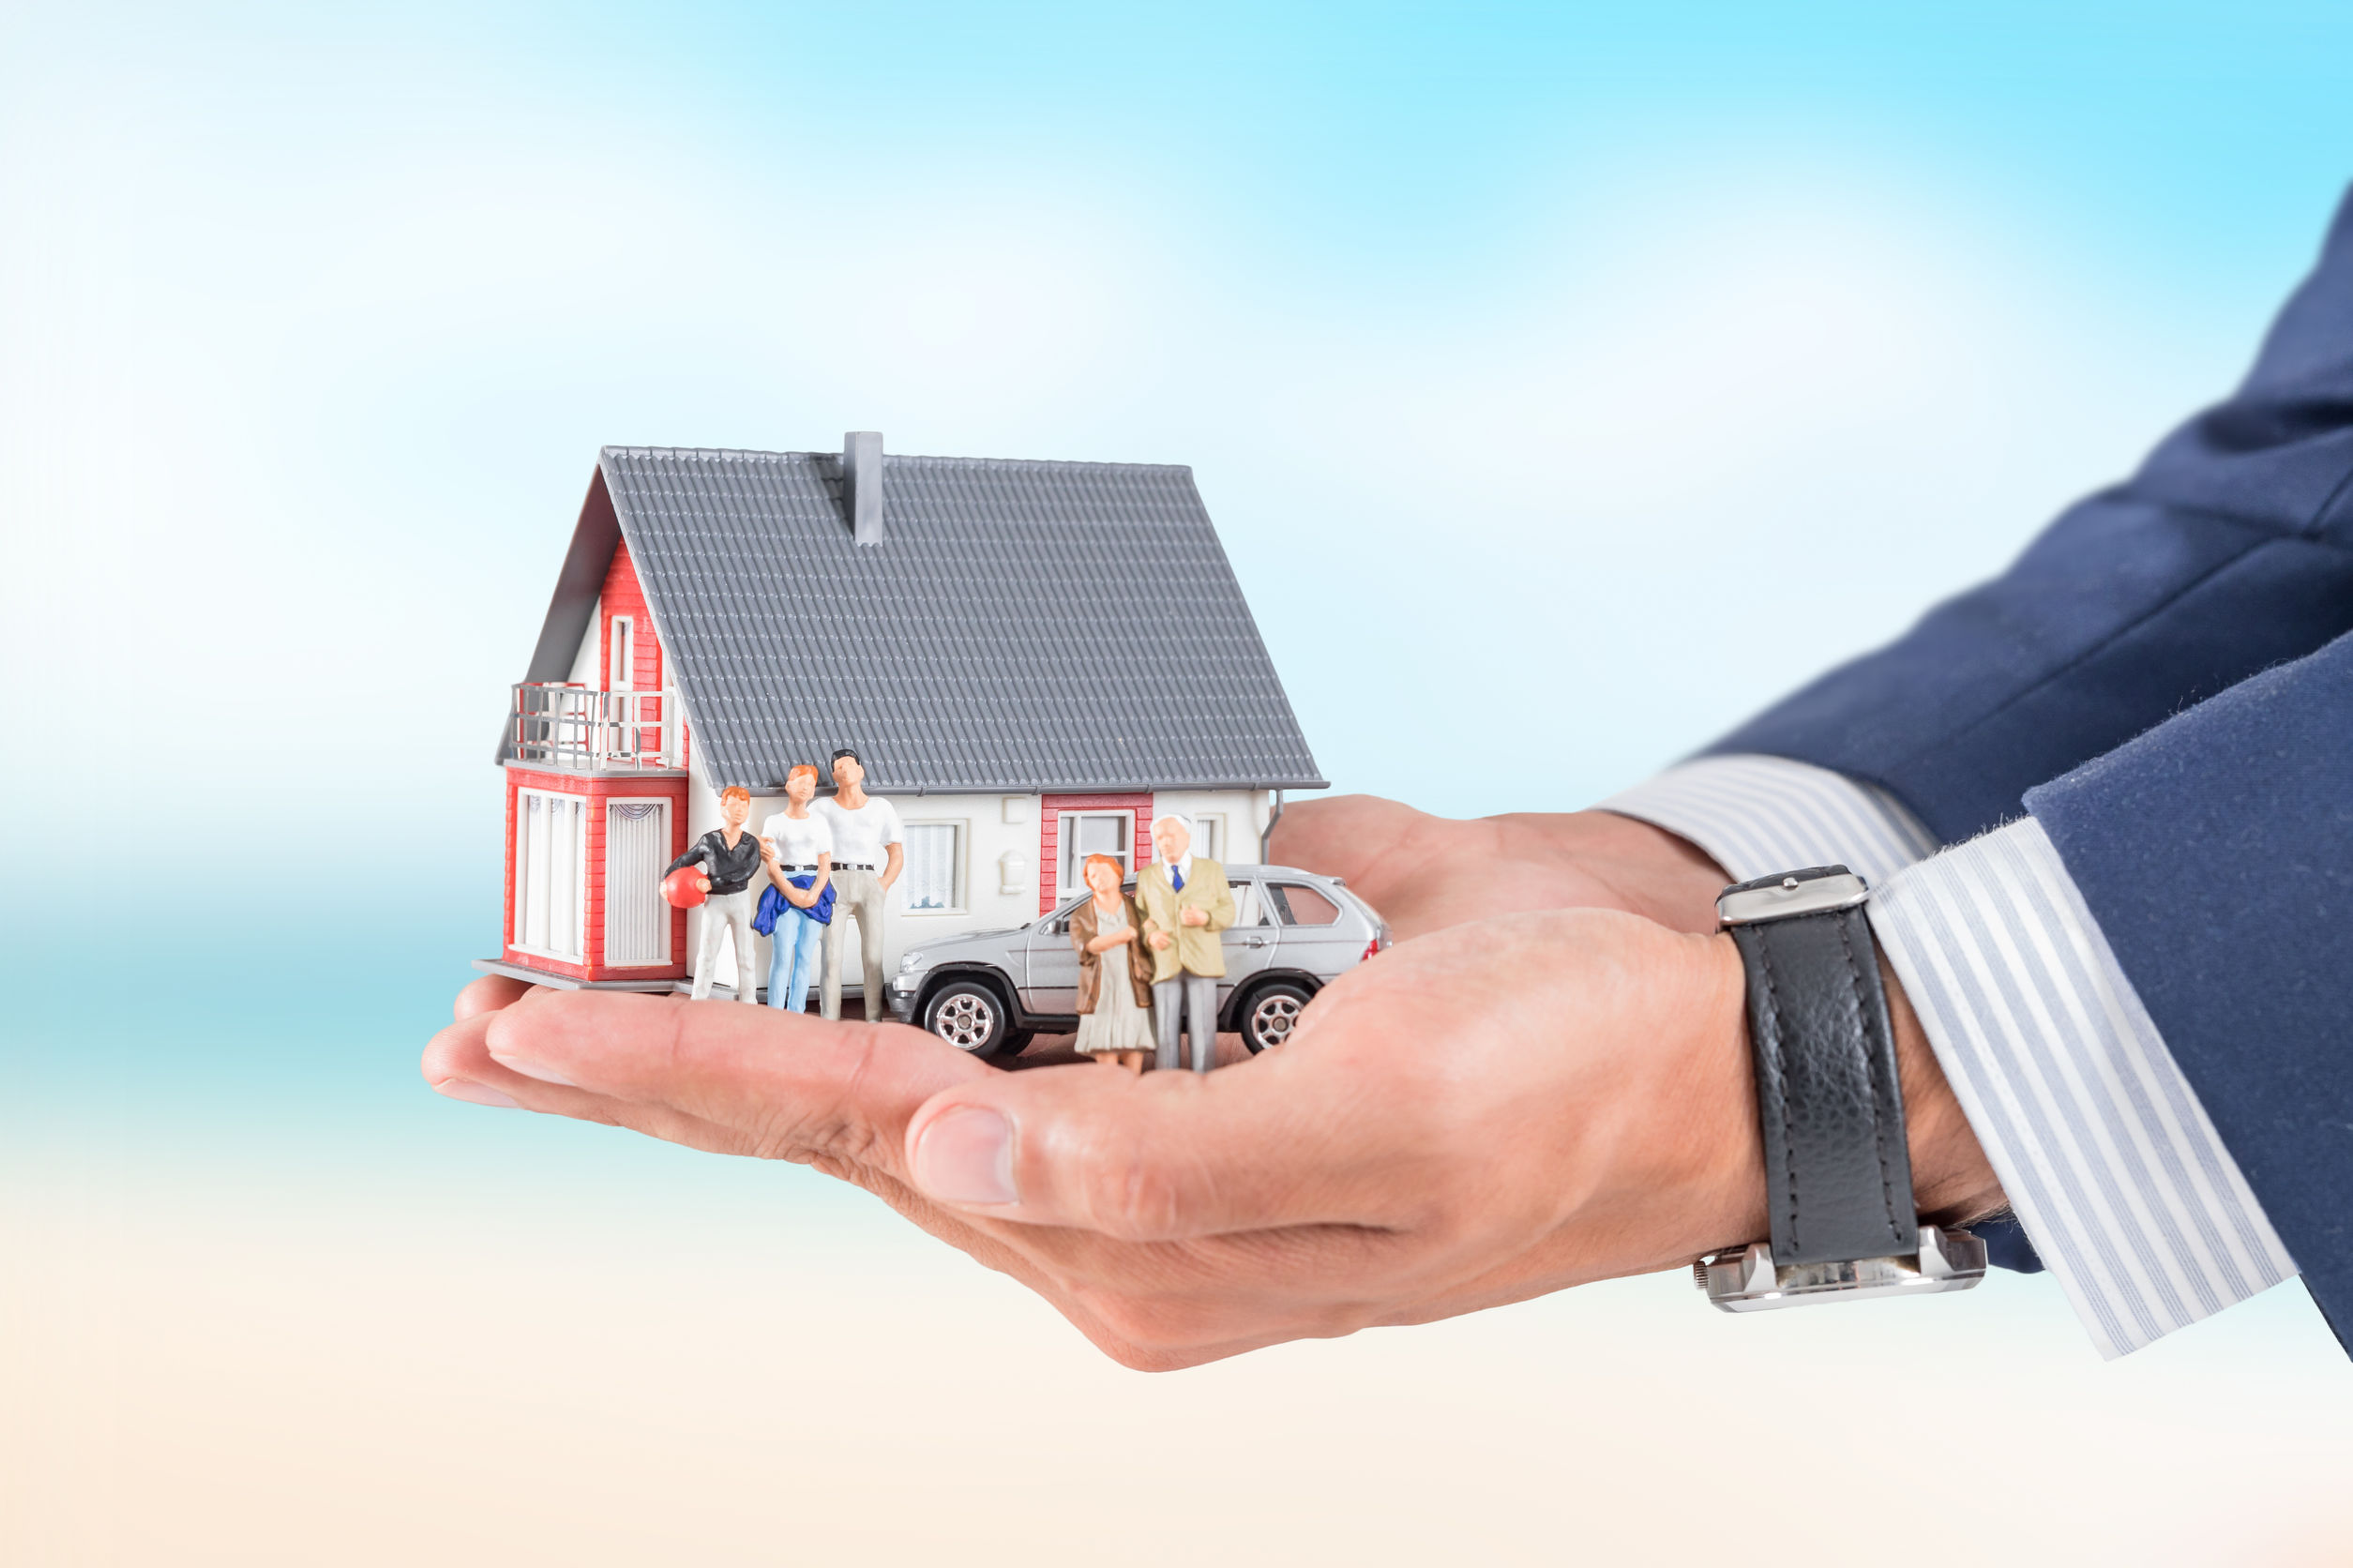 Réduire le coût de son assurance de prêt lors d’un achat immobilier